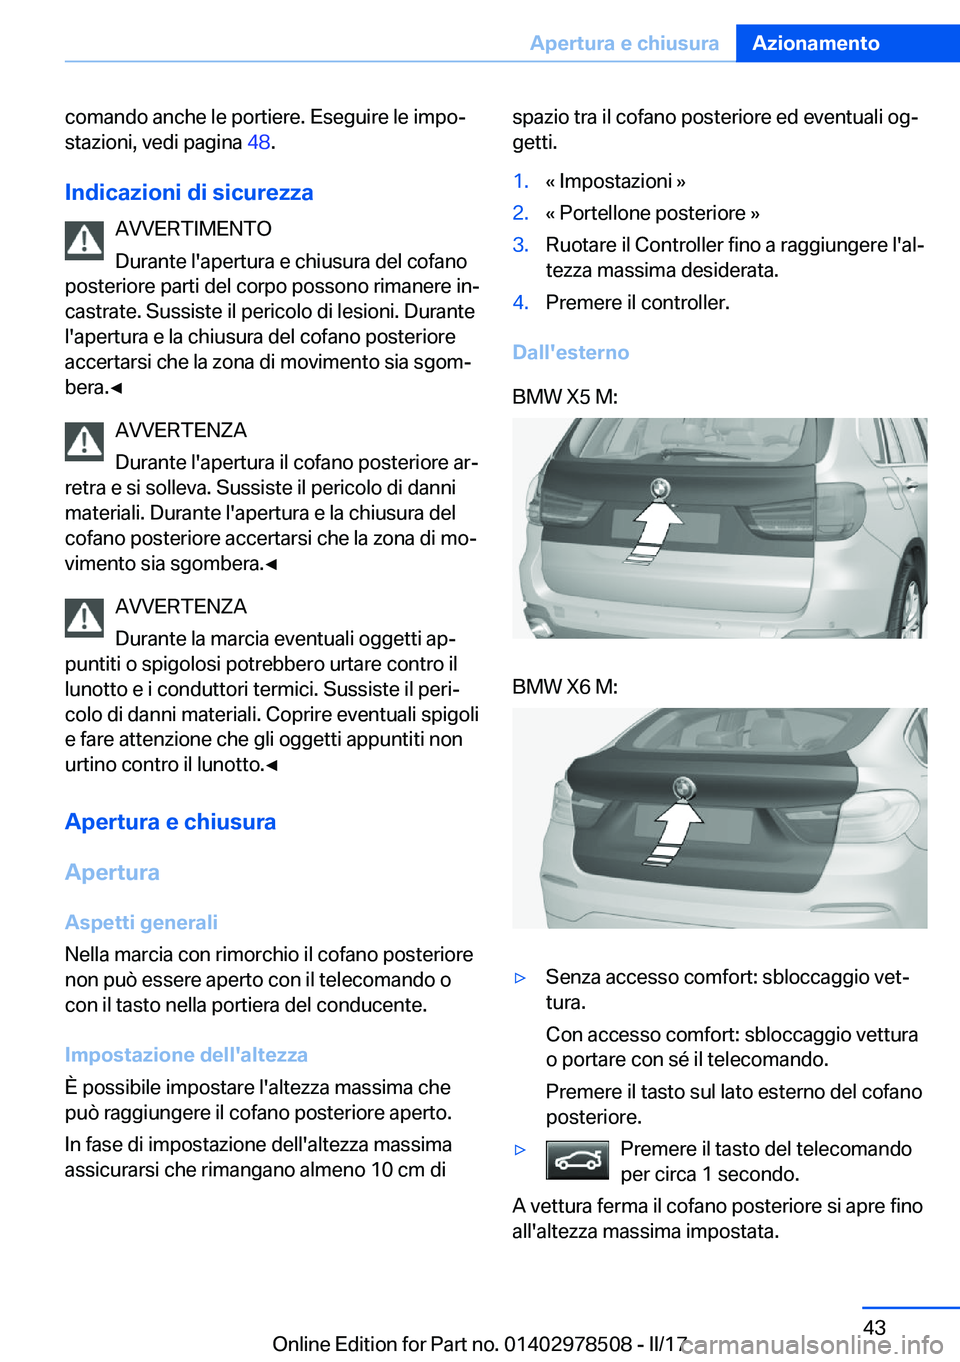 BMW X6 M 2017  Libretti Di Uso E manutenzione (in Italian) �c�o�m�a�n�d�o� �a�n�c�h�e� �l�e� �p�o�r�t�i�e�r�e�.� �E�s�e�g�u�i�r�e� �l�e� �i�m�p�oª
�s�t�a�z�i�o�n�i�,� �v�e�d�i� �p�a�g�i�n�a�  �4�8�.
�I�n�d�i�c�a�z�i�o�n�i��d�i��s�i�c�u�r�e�z�z�a �A�V�V�E�